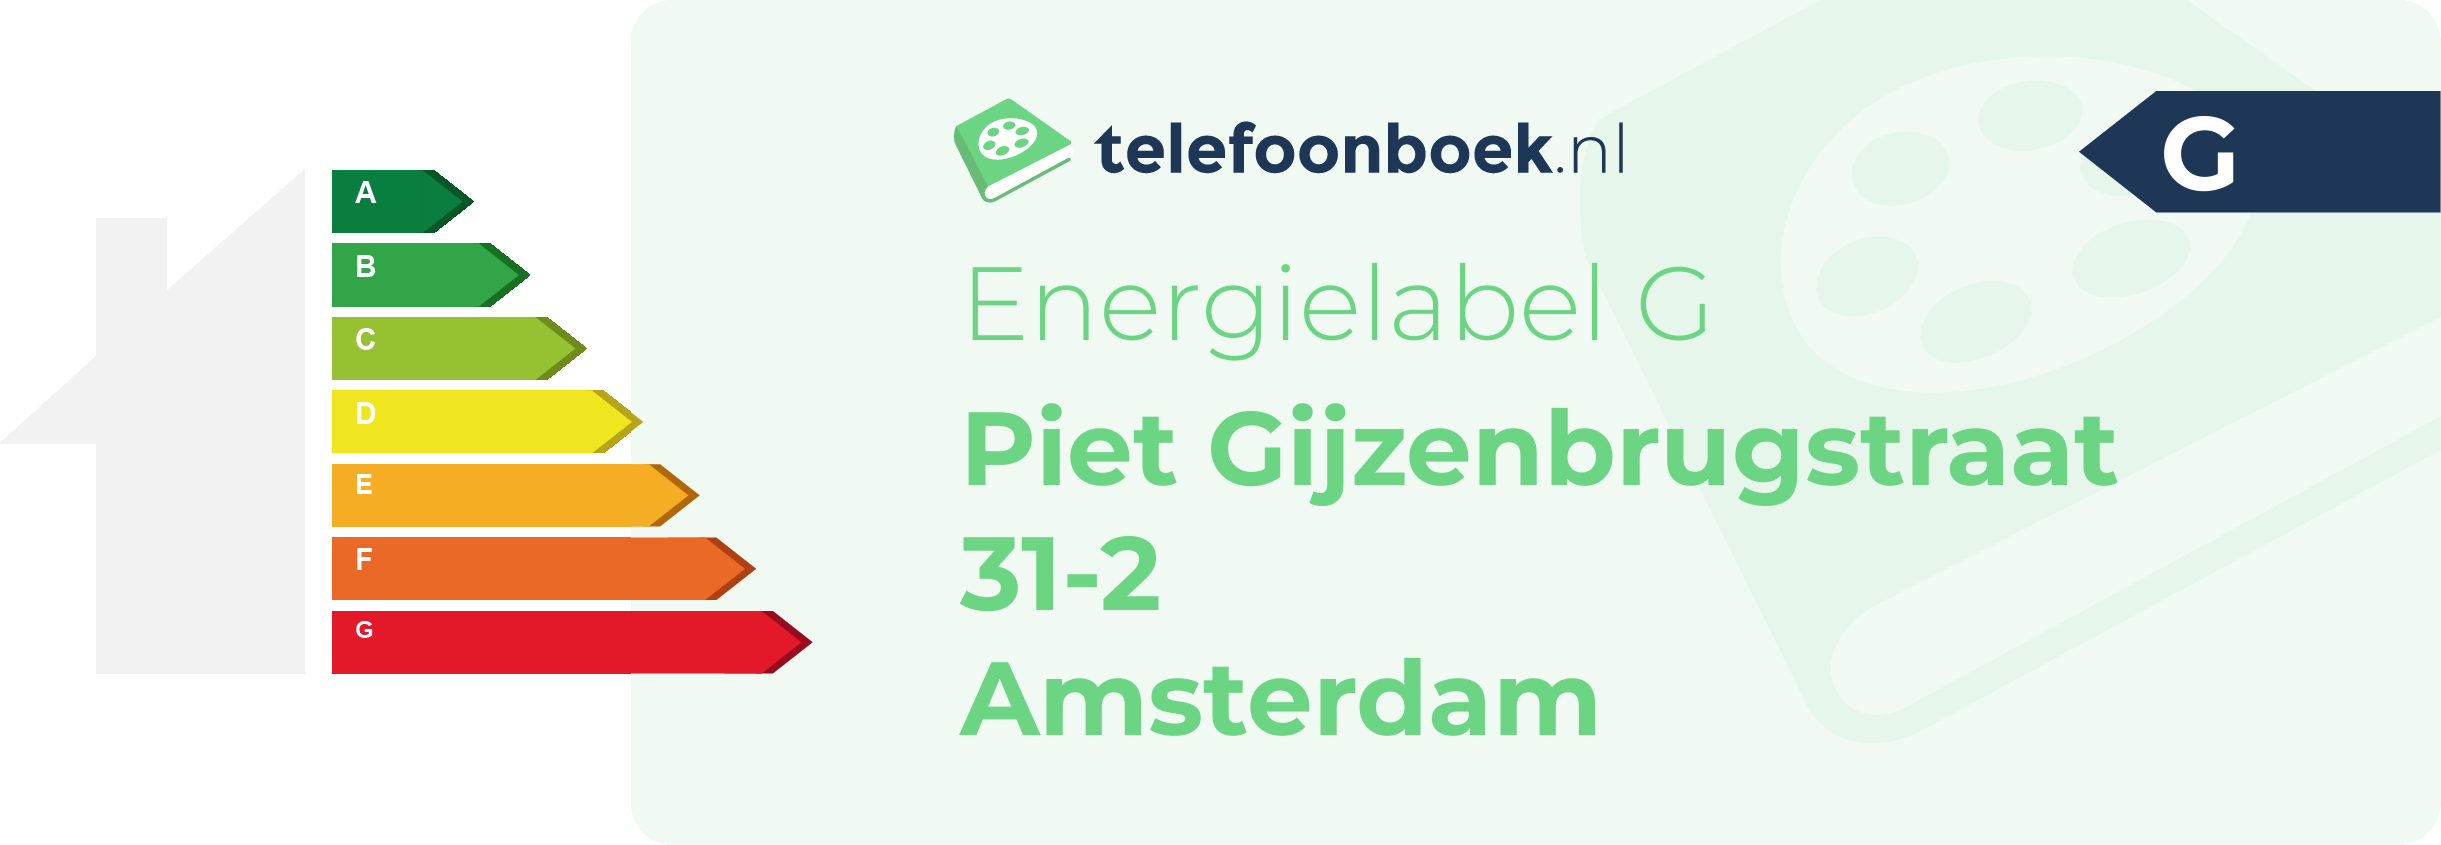 Energielabel Piet Gijzenbrugstraat 31-2 Amsterdam